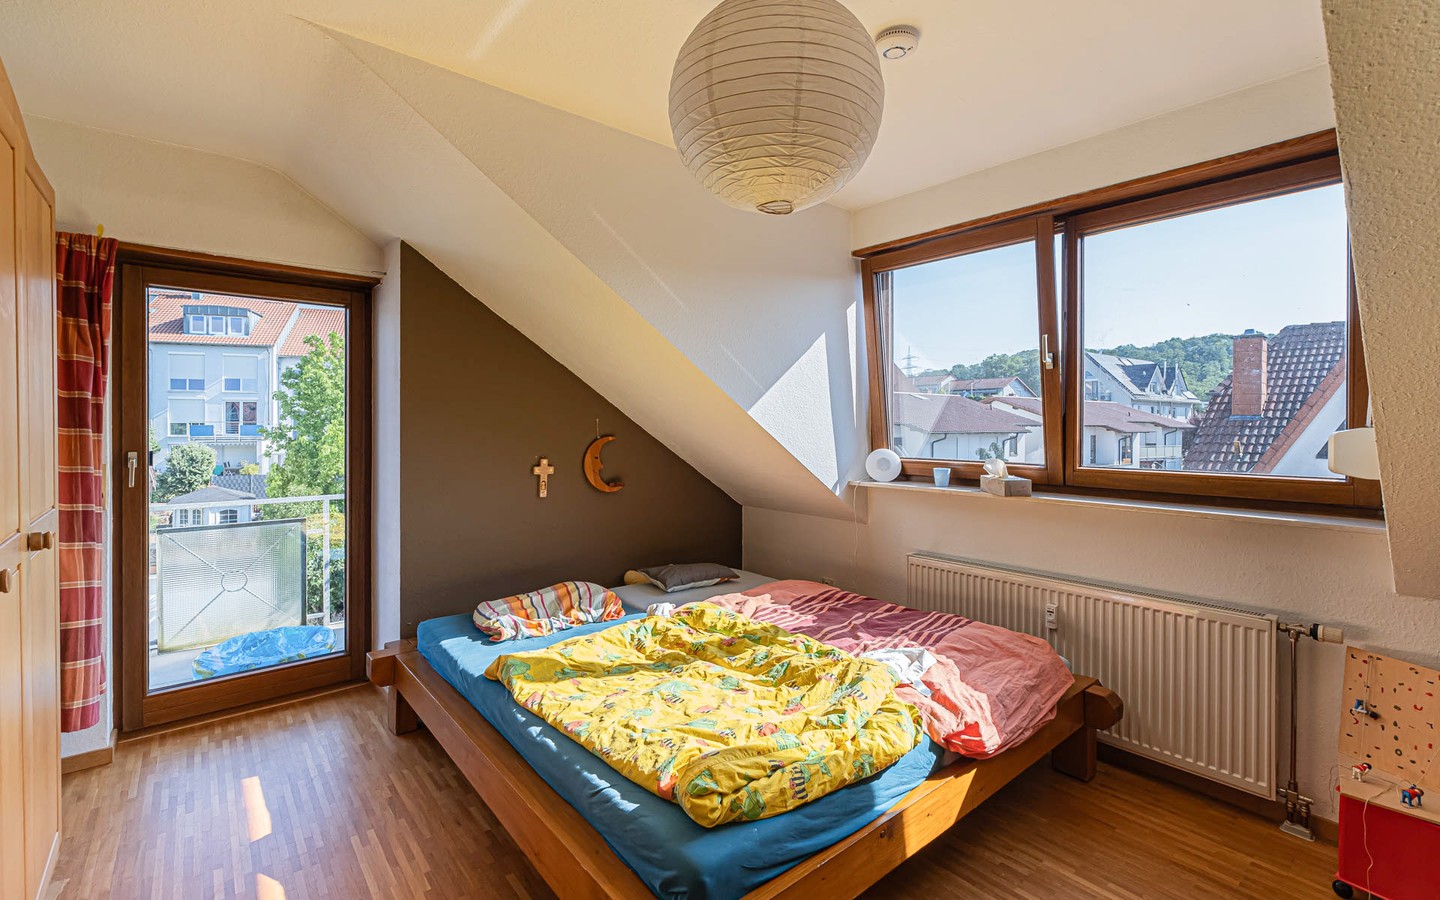 Schlafzimmer - Hell-freundlich-gemütlich: Großzügige 3-Zimmerwohnung in Wiesloch